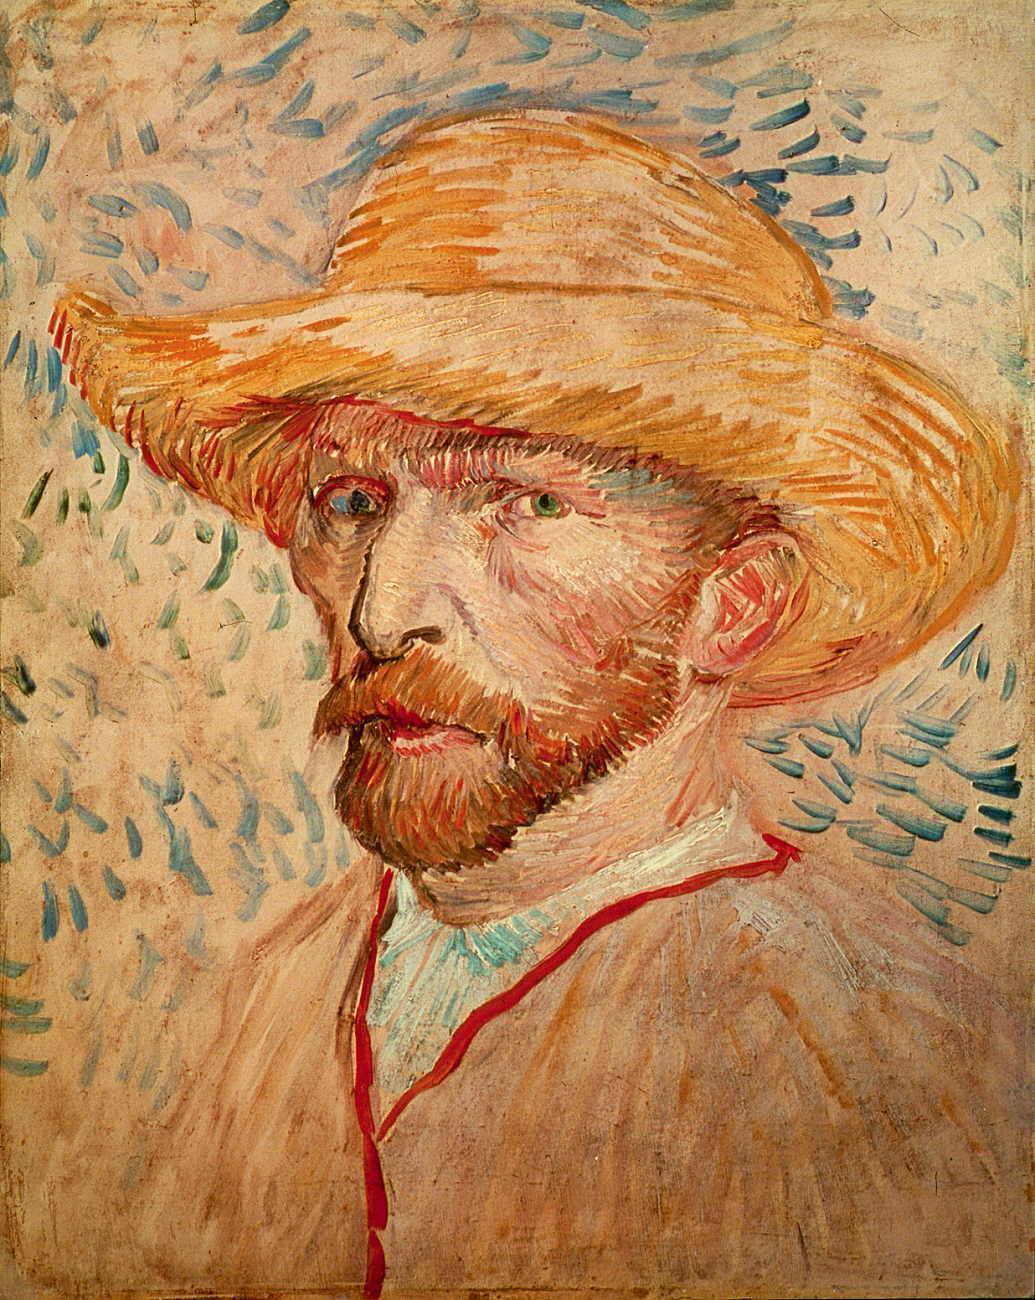 Self Portrait with Straw Hat 1